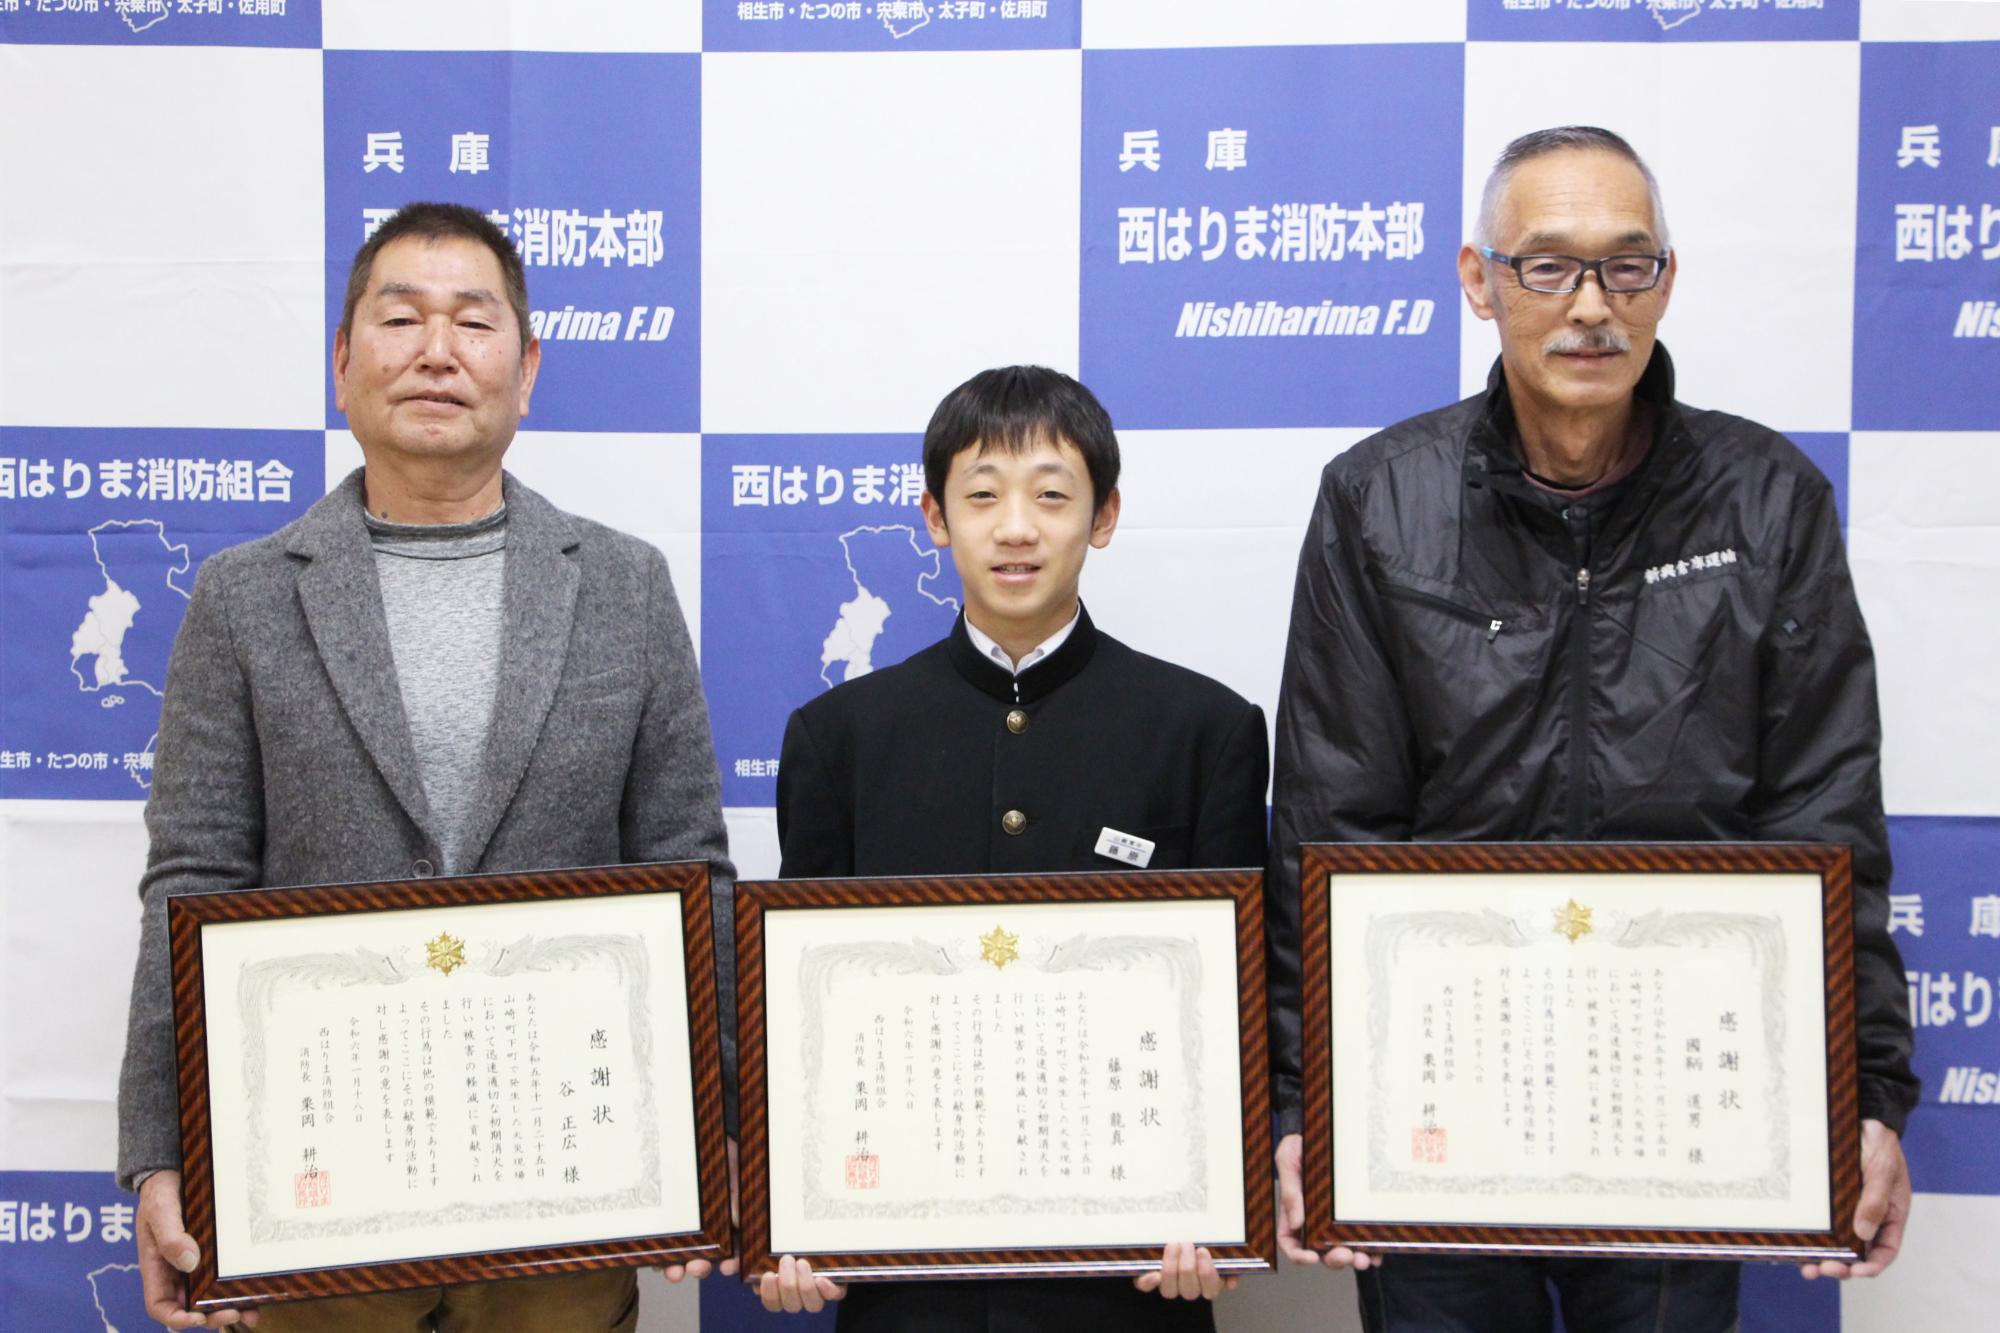 宍粟消防署で谷さん、藤原さん、国鞆さんが感謝状をかかげ横一列に並び、笑顔を見せている写真